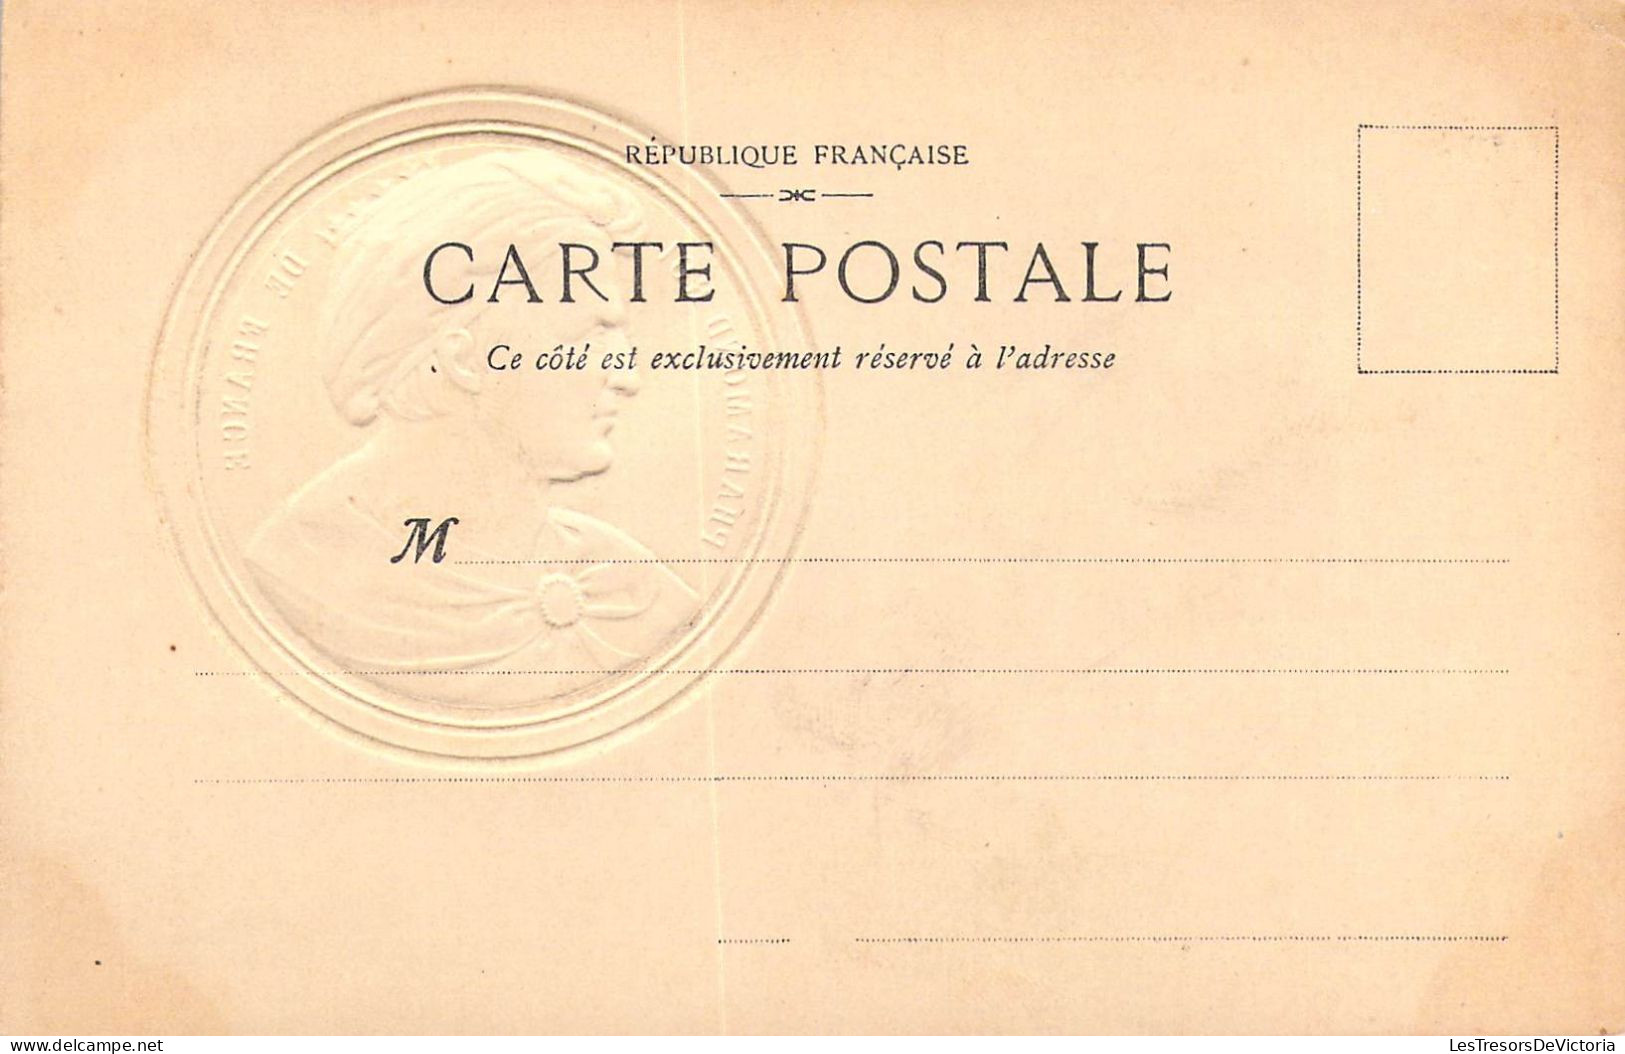 PERSONNAGES HISTORIQUES - Pharamond Roi De France - Carte Postale Ancienne - Historische Persönlichkeiten